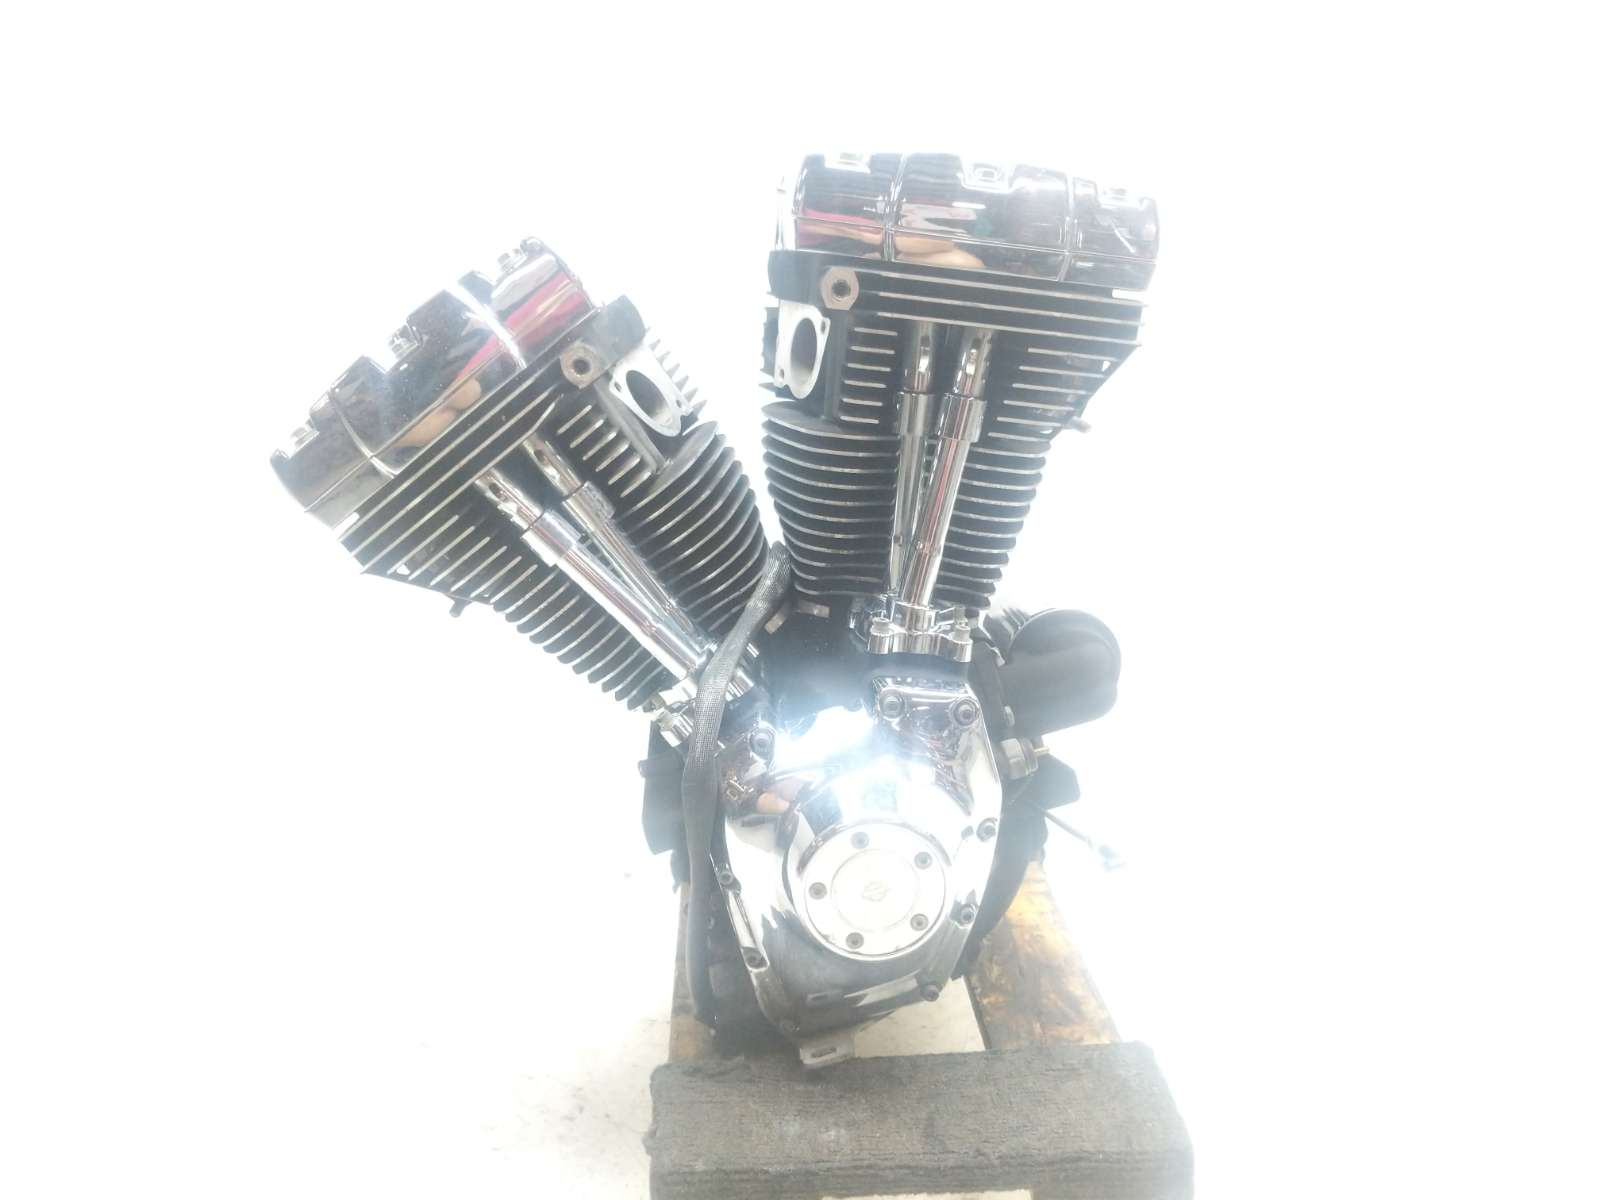 02 Harley Davidson FXDL Dyna Low Rider Engine Motor